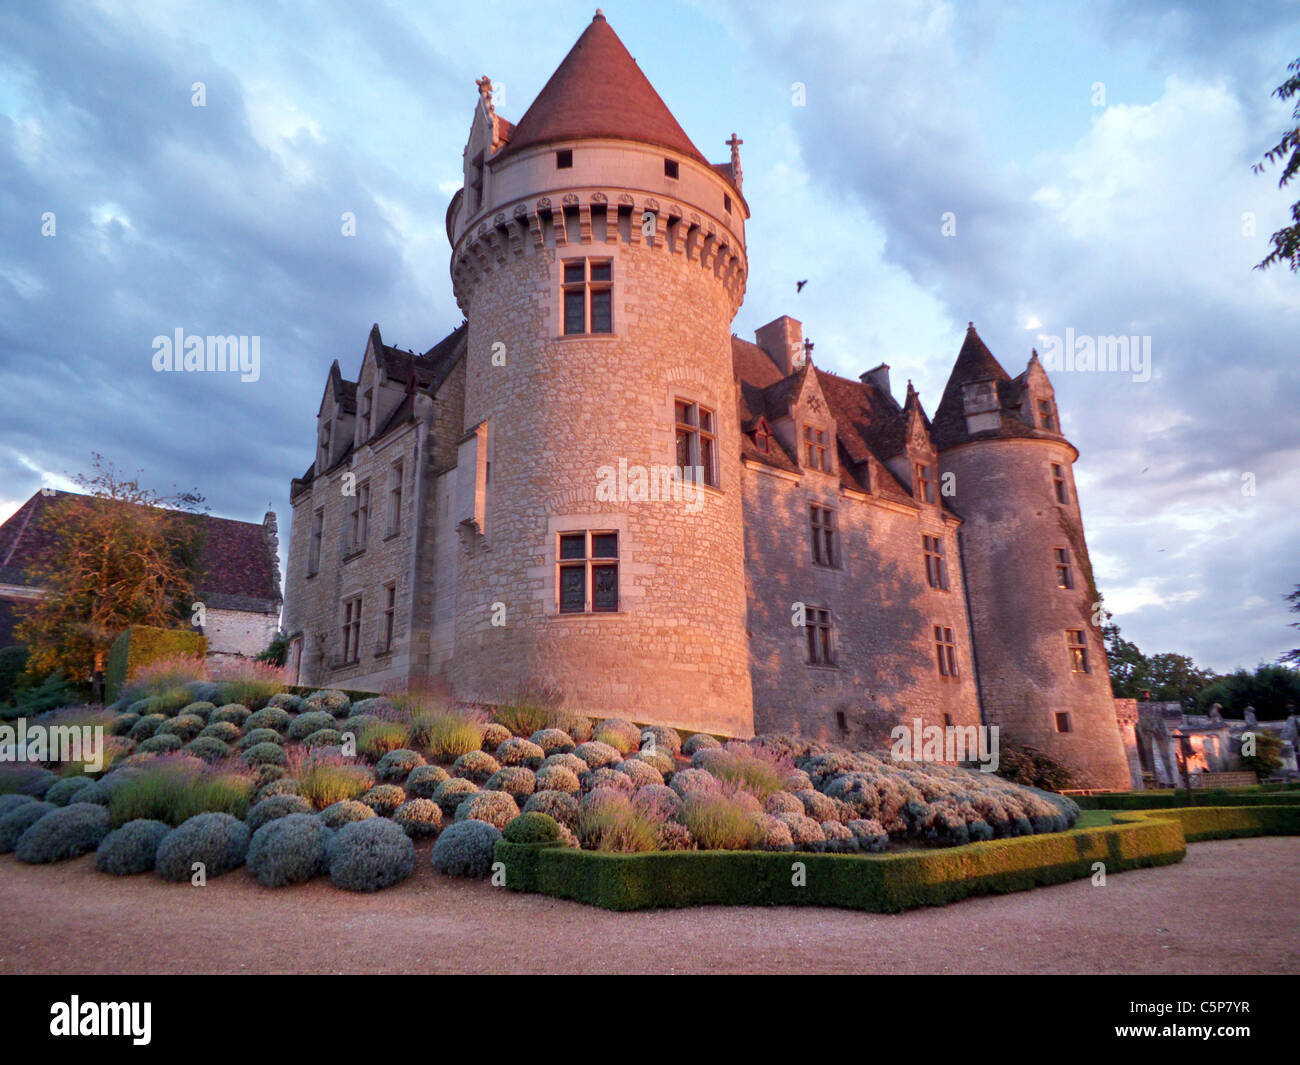 Chateau Les Milandes. Castlenaud la Chapelle. Ancienne demure de Josephine Baker. Just before sunset. The Dordogne, France. Stock Photo